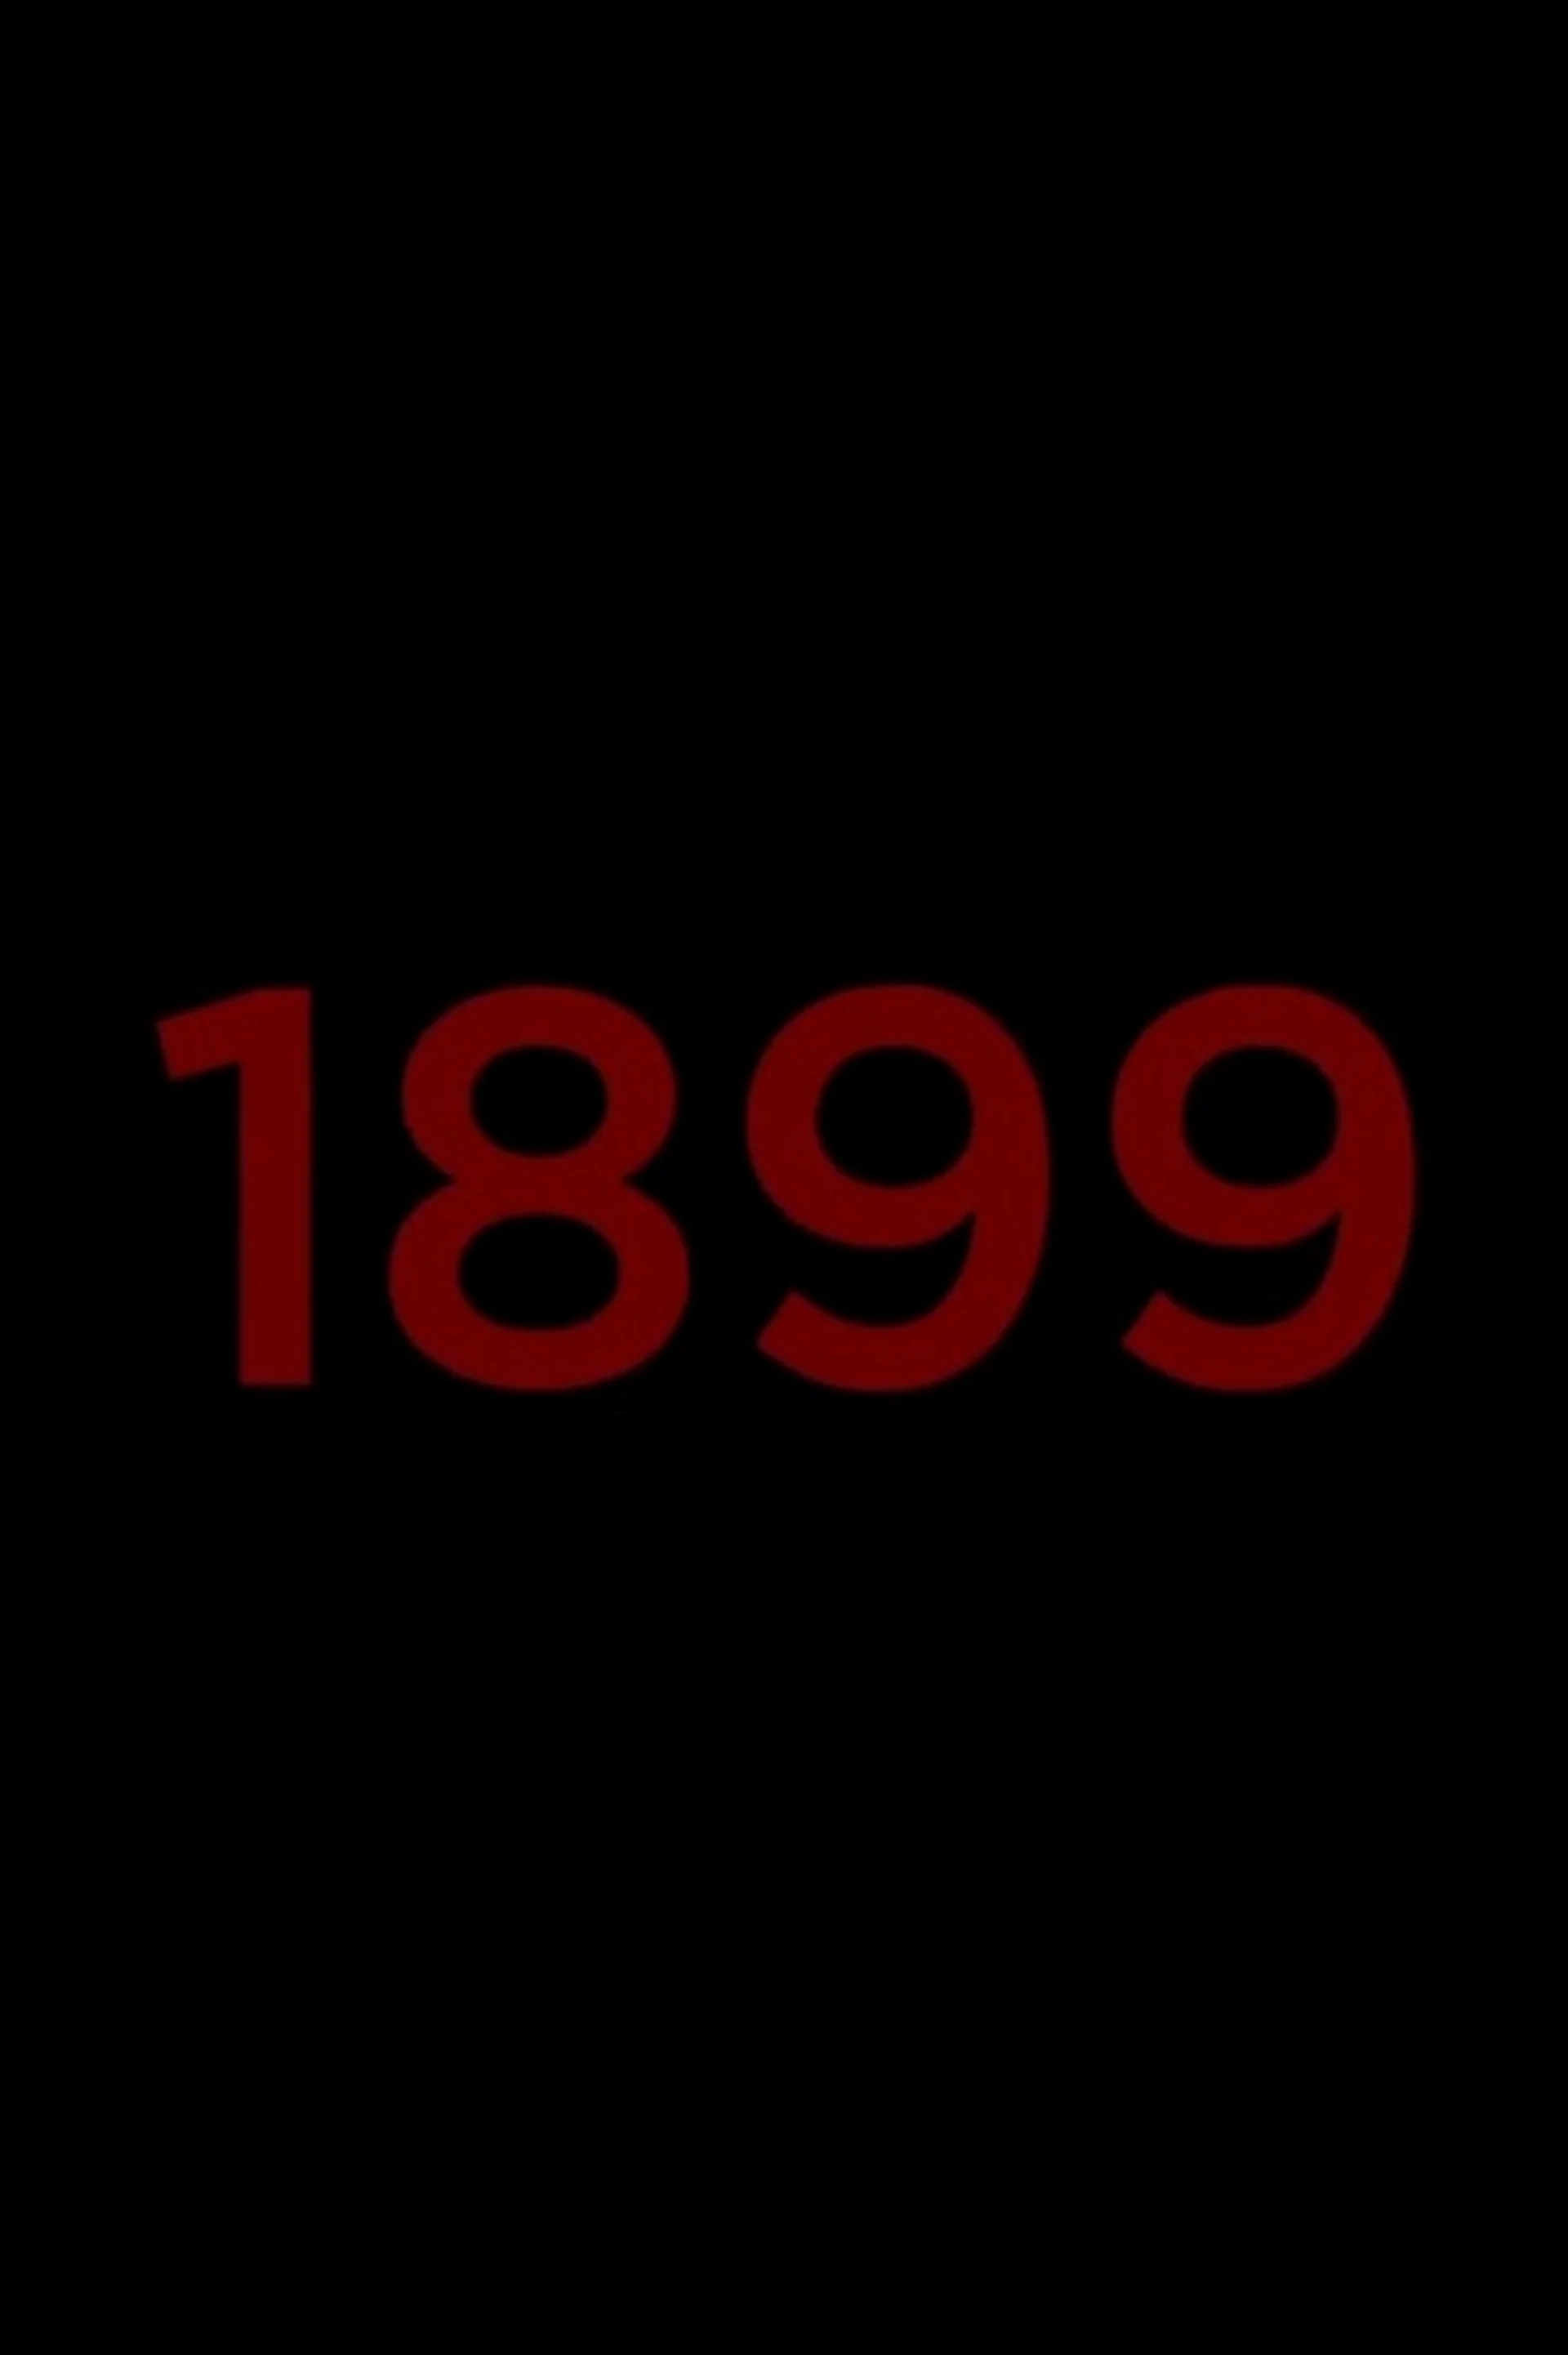 «1899» (1899)